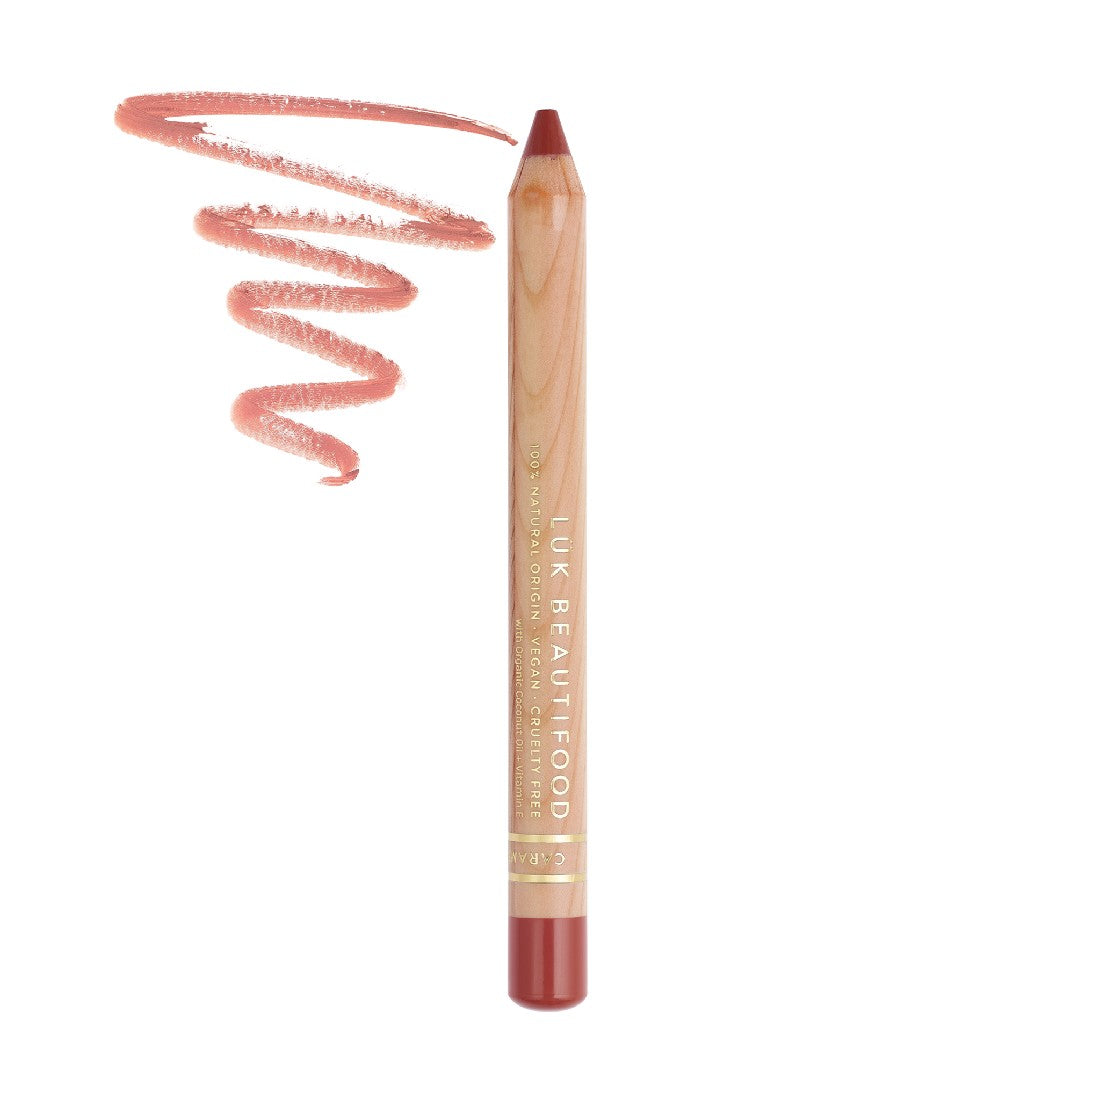 Luk Beautifood Lipstick Crayon - Caramel Kiss